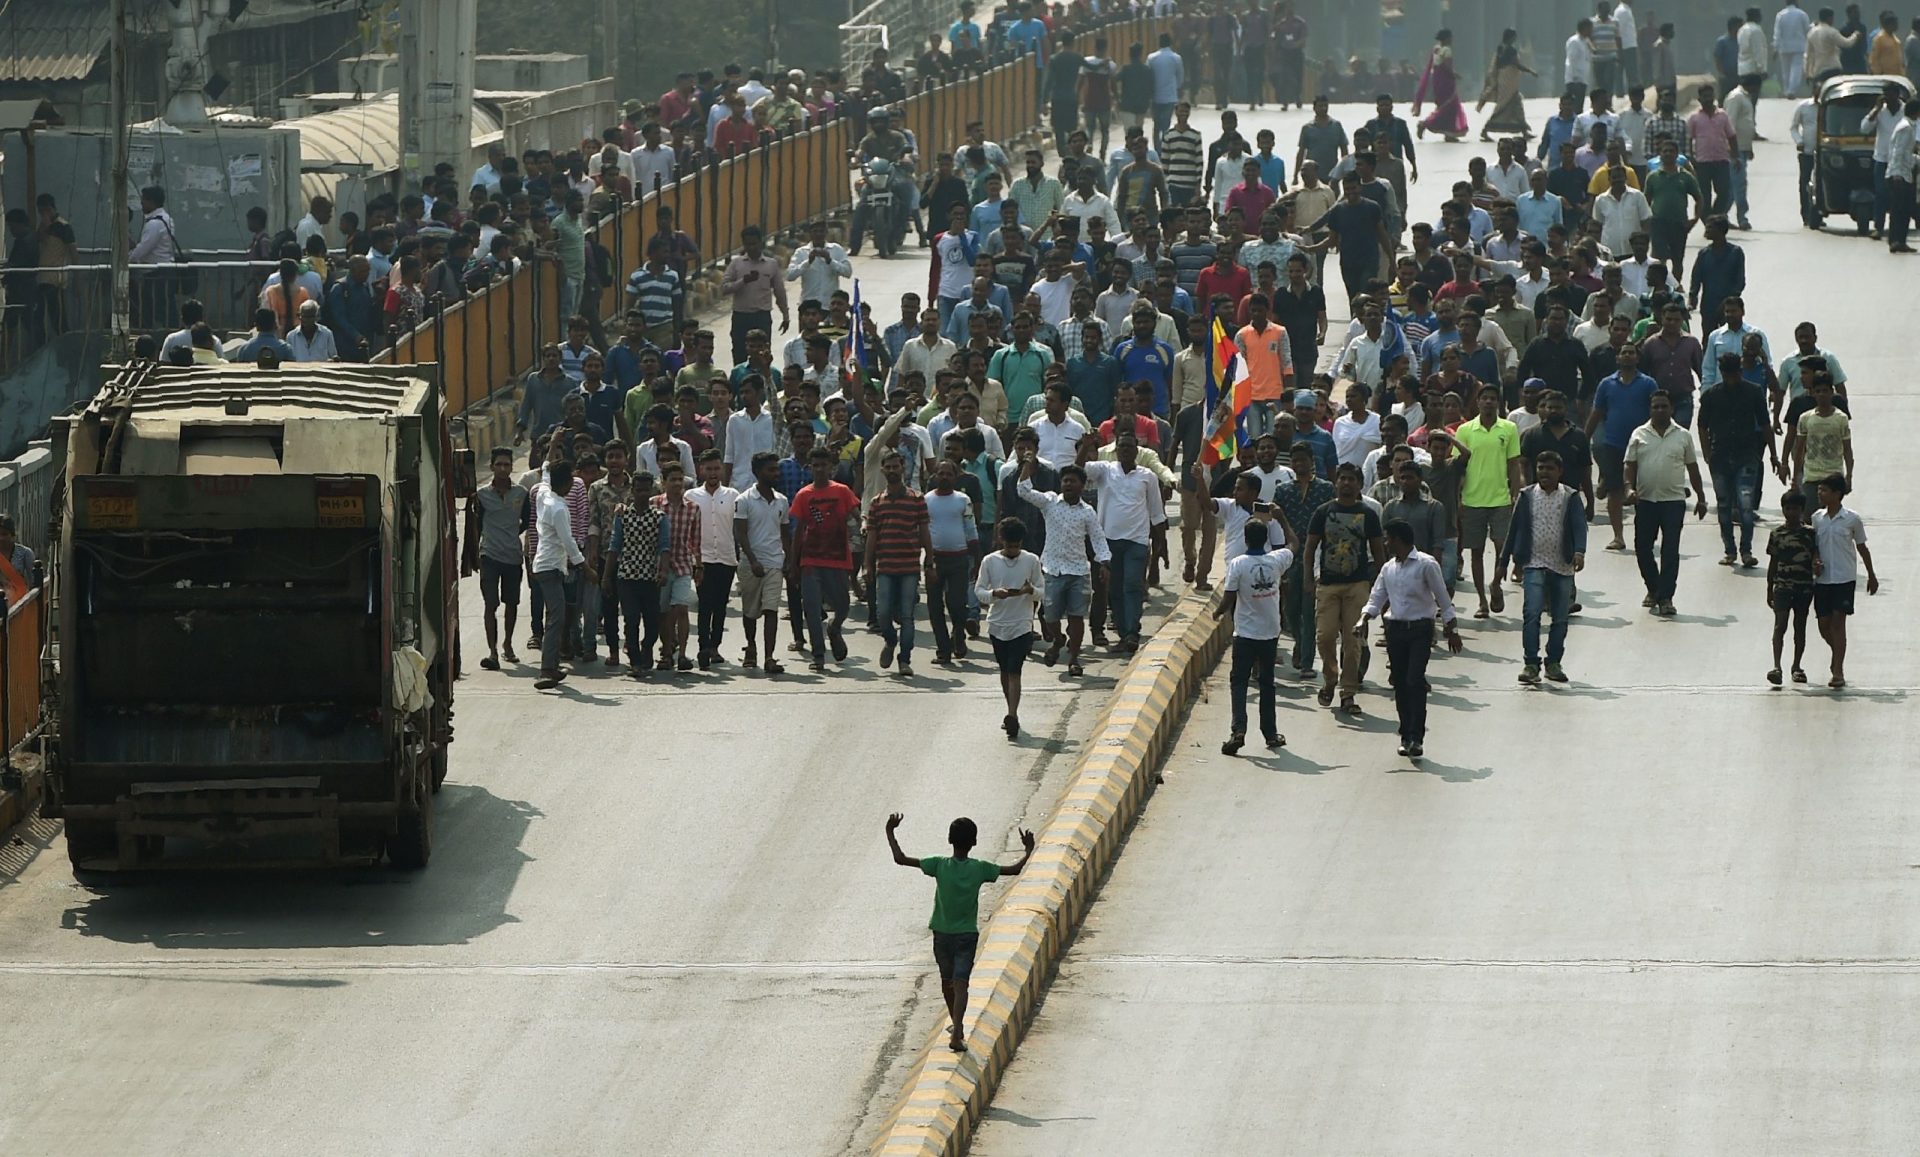 Índia. Confrontos entre castas geraram protestos no estado de Maharashtra